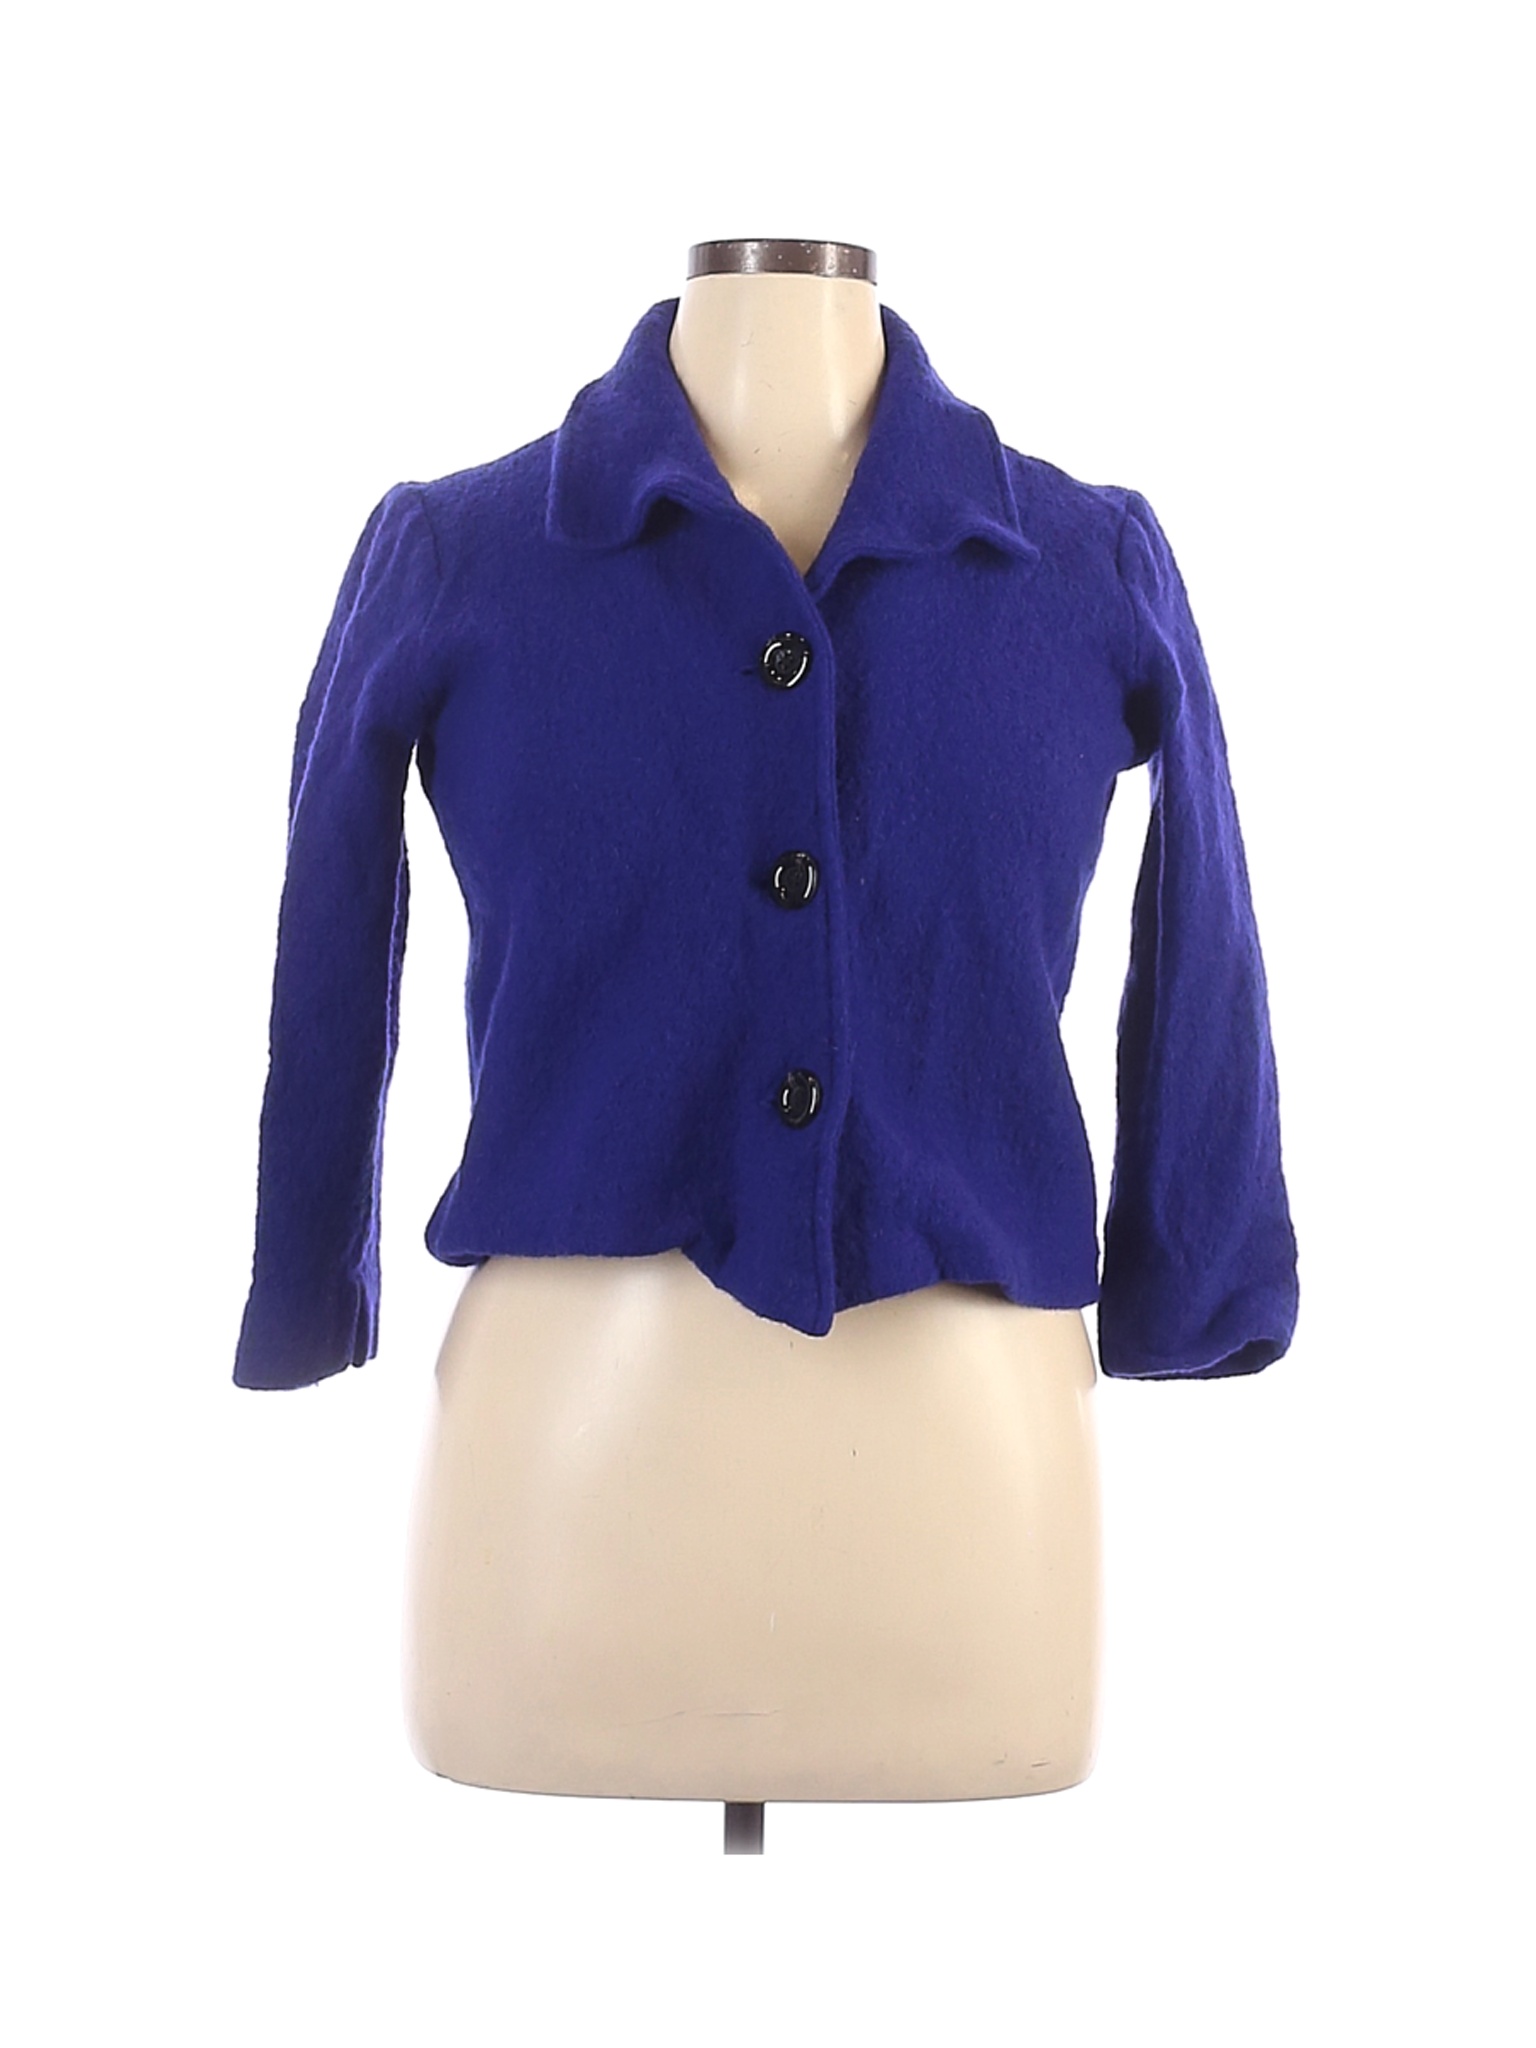 Kasper 100% Wool Solid Blue Wool Coat Size XL - 97% off | thredUP